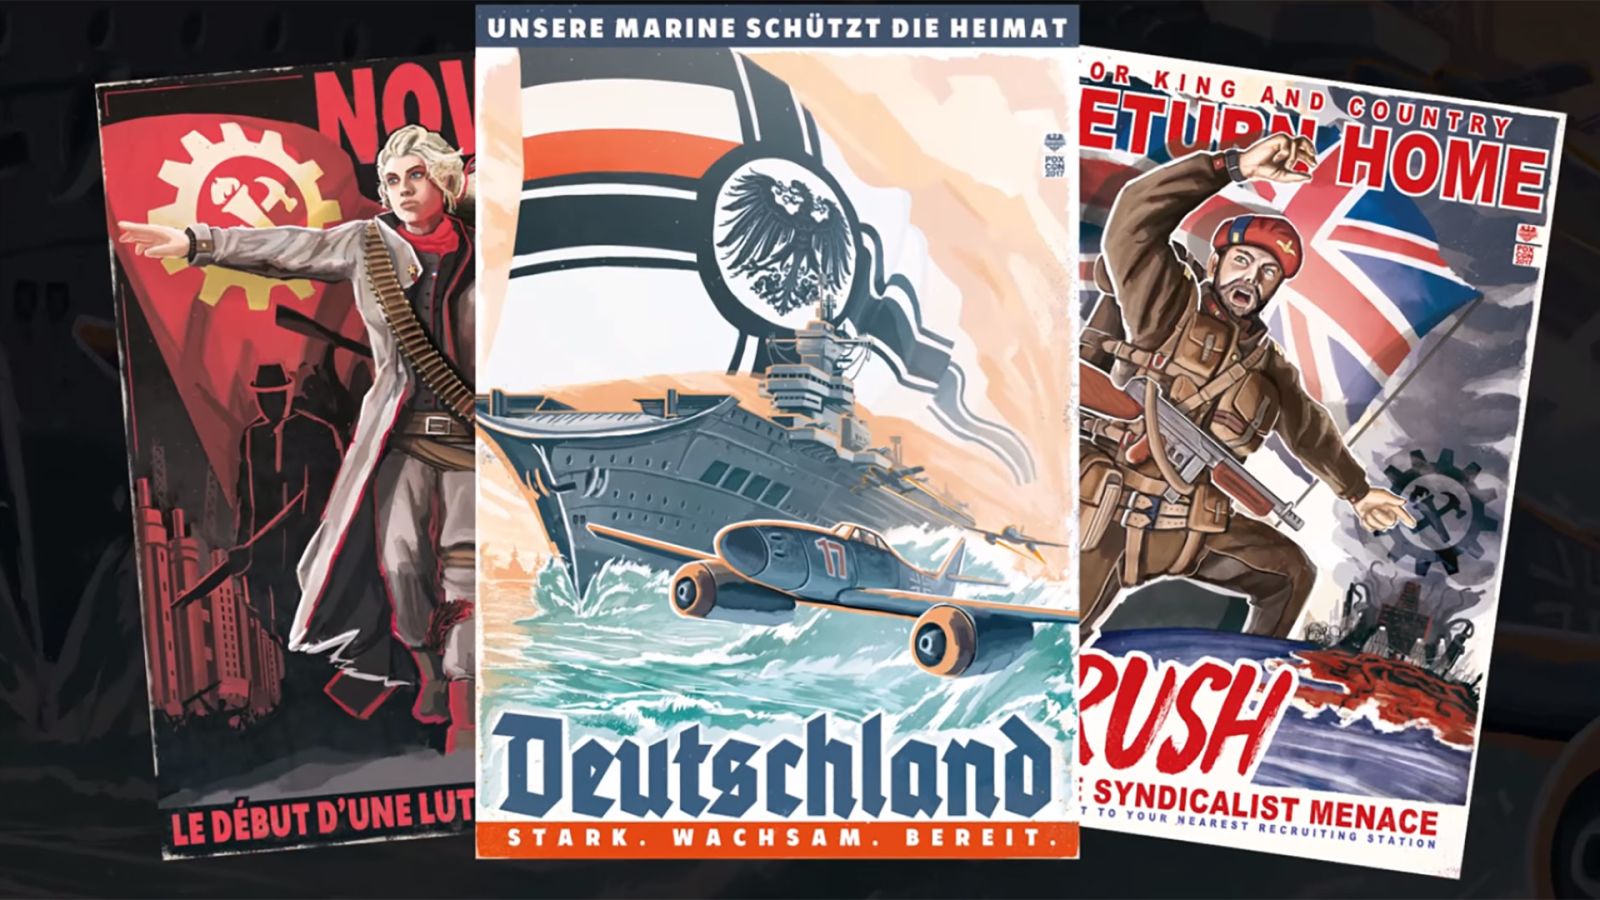 Kaiserreich, The Mod That Changes The World - GKZ Hitech